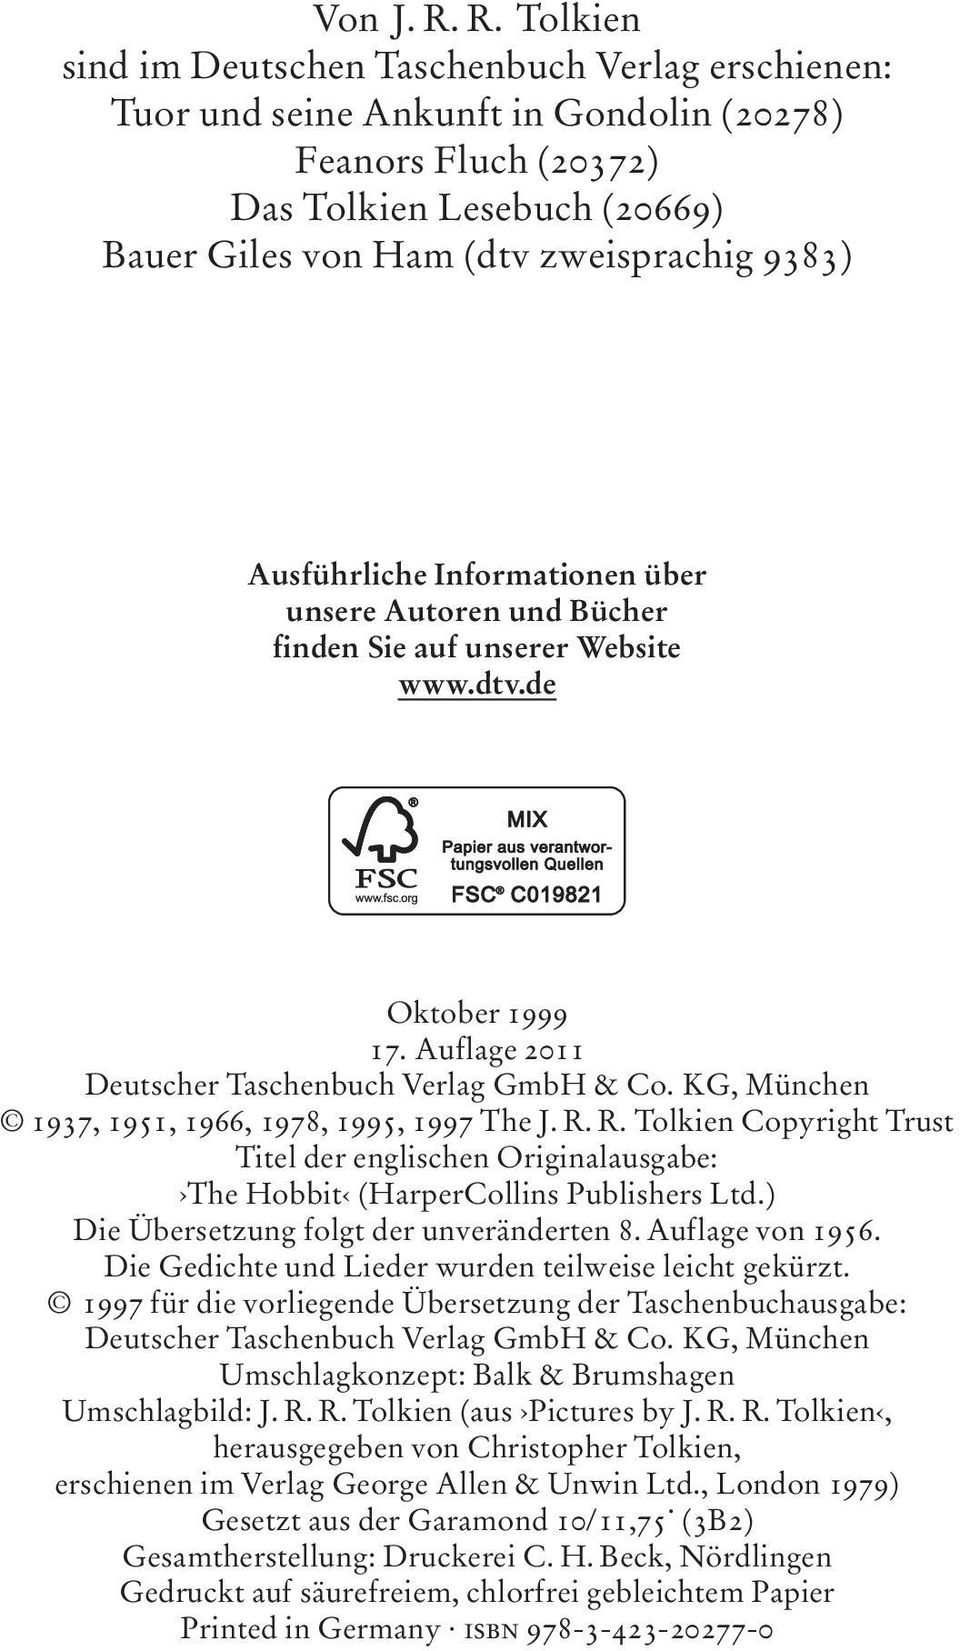 Ausführliche Informationen über unsere Autoren und Bücher finden Sie auf unserer Website www.dtv.de Oktober 1999 17.Auflage2011 Deutscher Taschenbuch Verlag GmbH & Co.